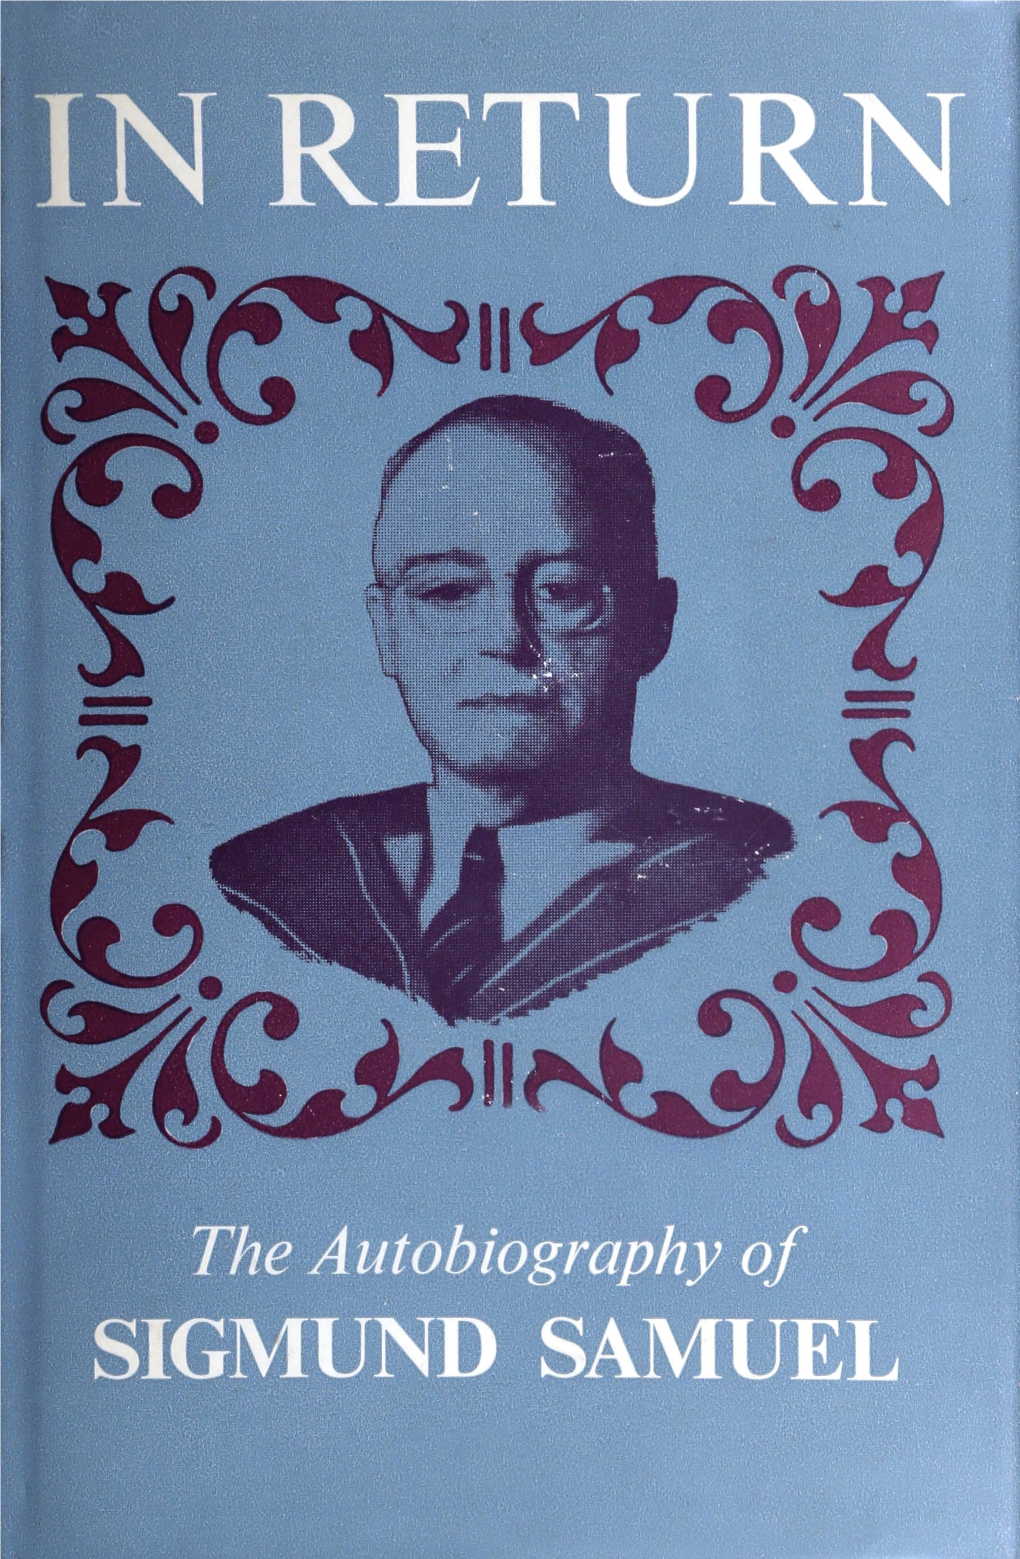 The Autobiography of Sigmund Samuel